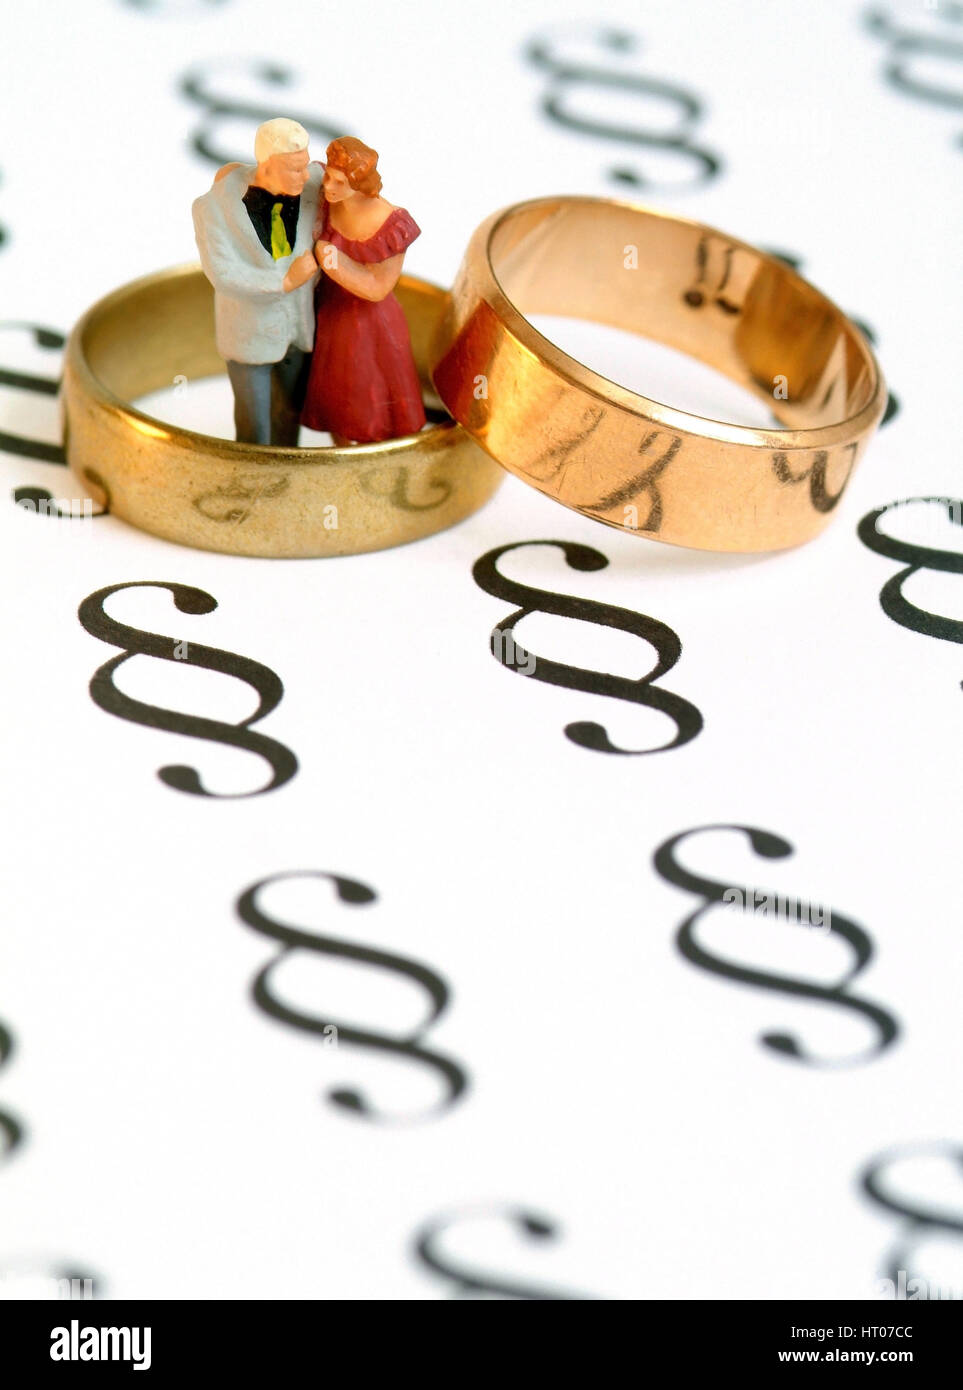 Symbolbild Eherecht Ehevertrag, symbolique - pour le mariage Banque D'Images